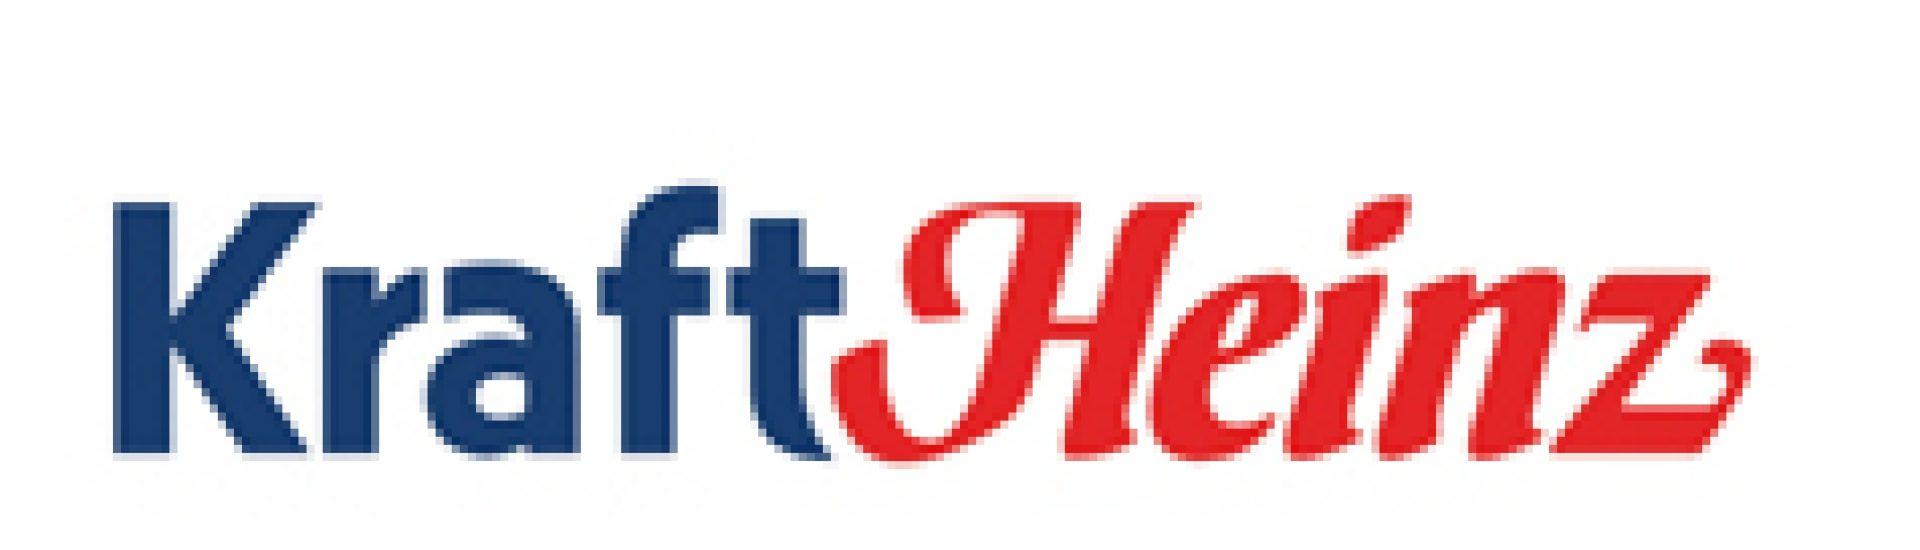 Jet-Puffed Logo - kraft heinz logo - NIZO